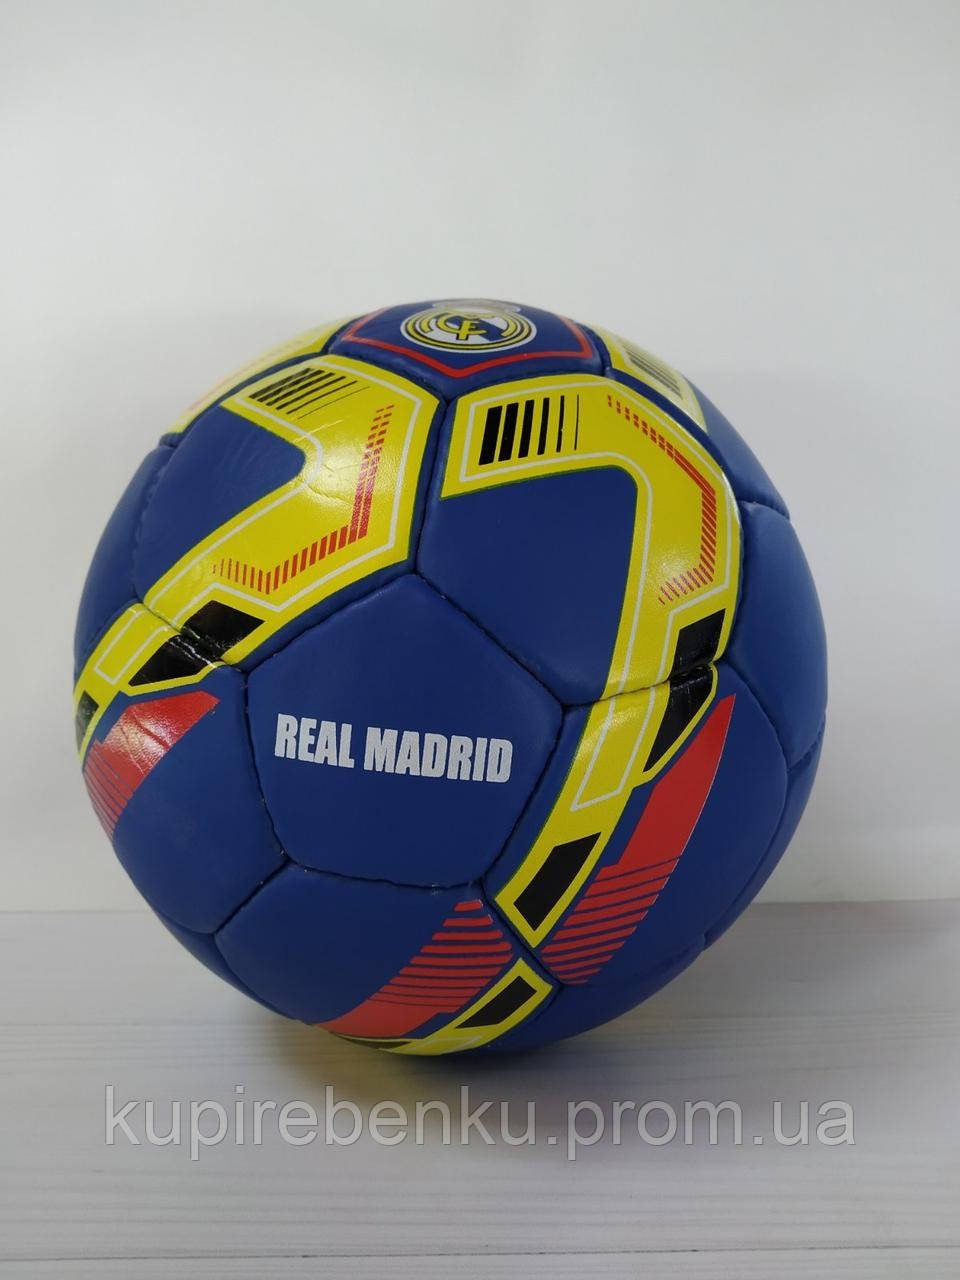 

Мяч футбольный Real Madrid Grippy кожа, сшит вручную, пятислойный Maraton MFRM-4